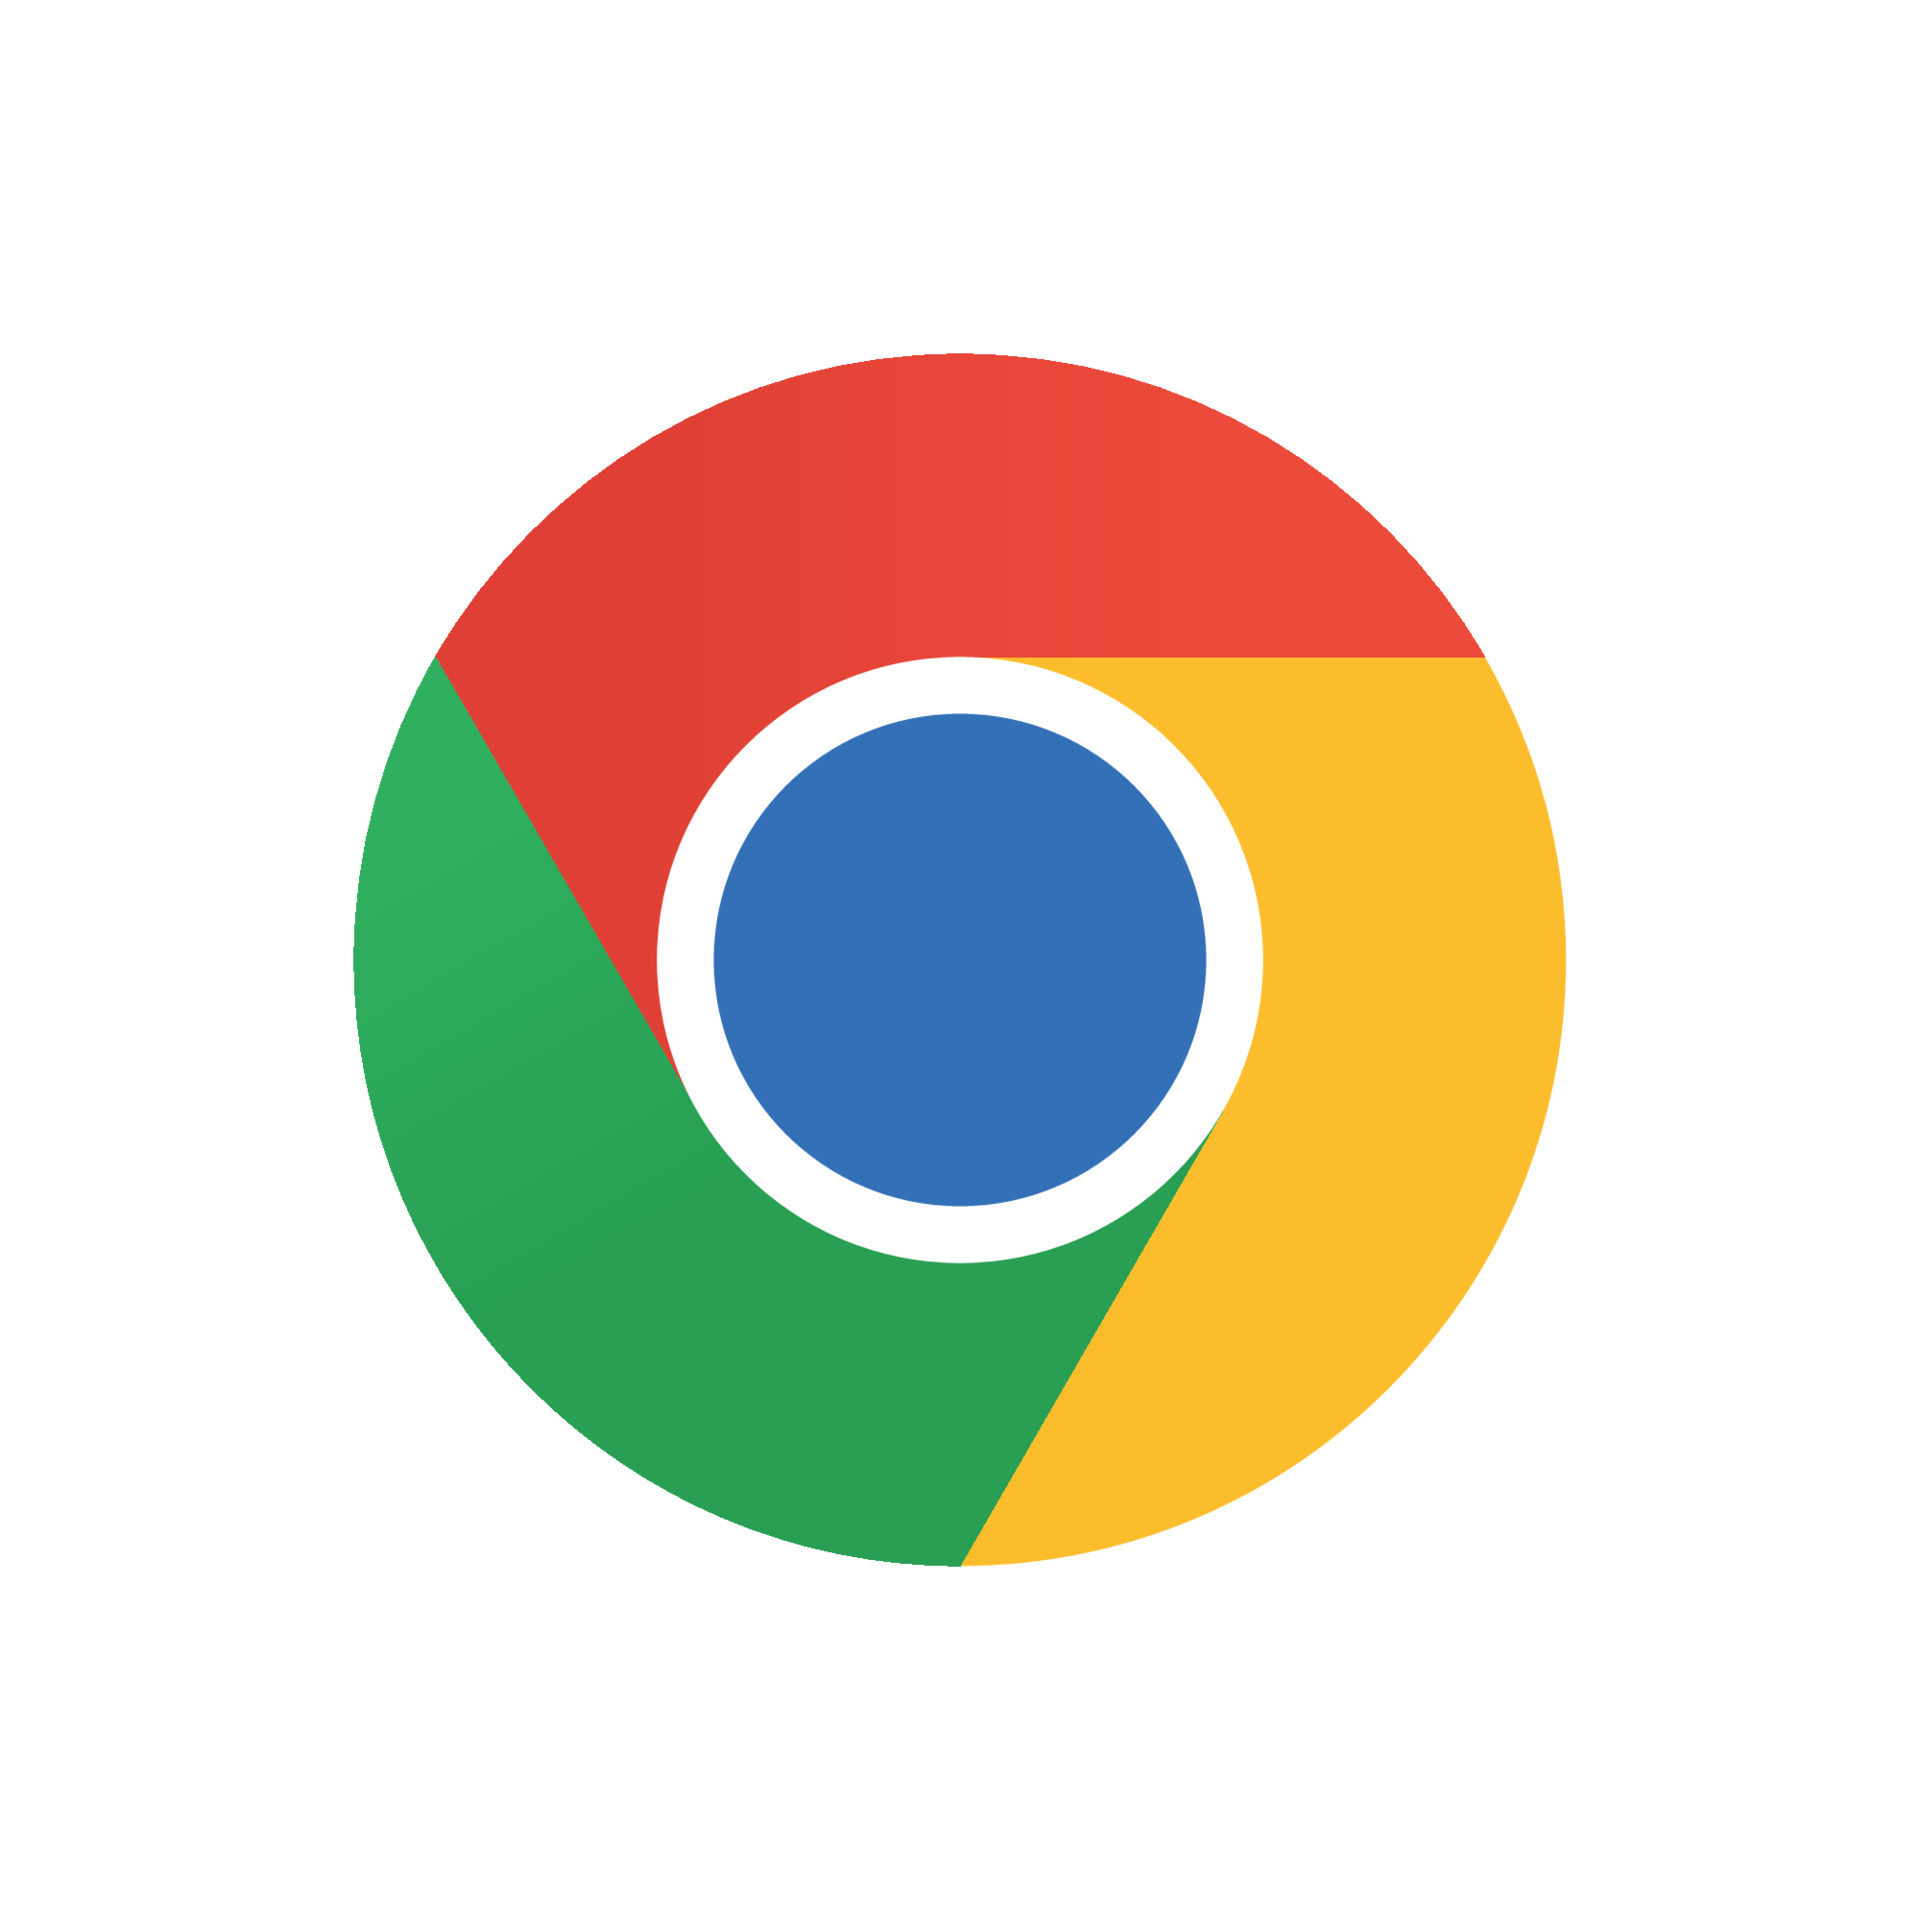 Logo của Chrome trên nền trong suốt trắng: Chrome không chỉ mang lại trải nghiệm duyệt web tuyệt vời mà còn có logo độc đáo. Hãy thưởng thức hình ảnh với phiên bản logo trong suốt trên nền trắng.